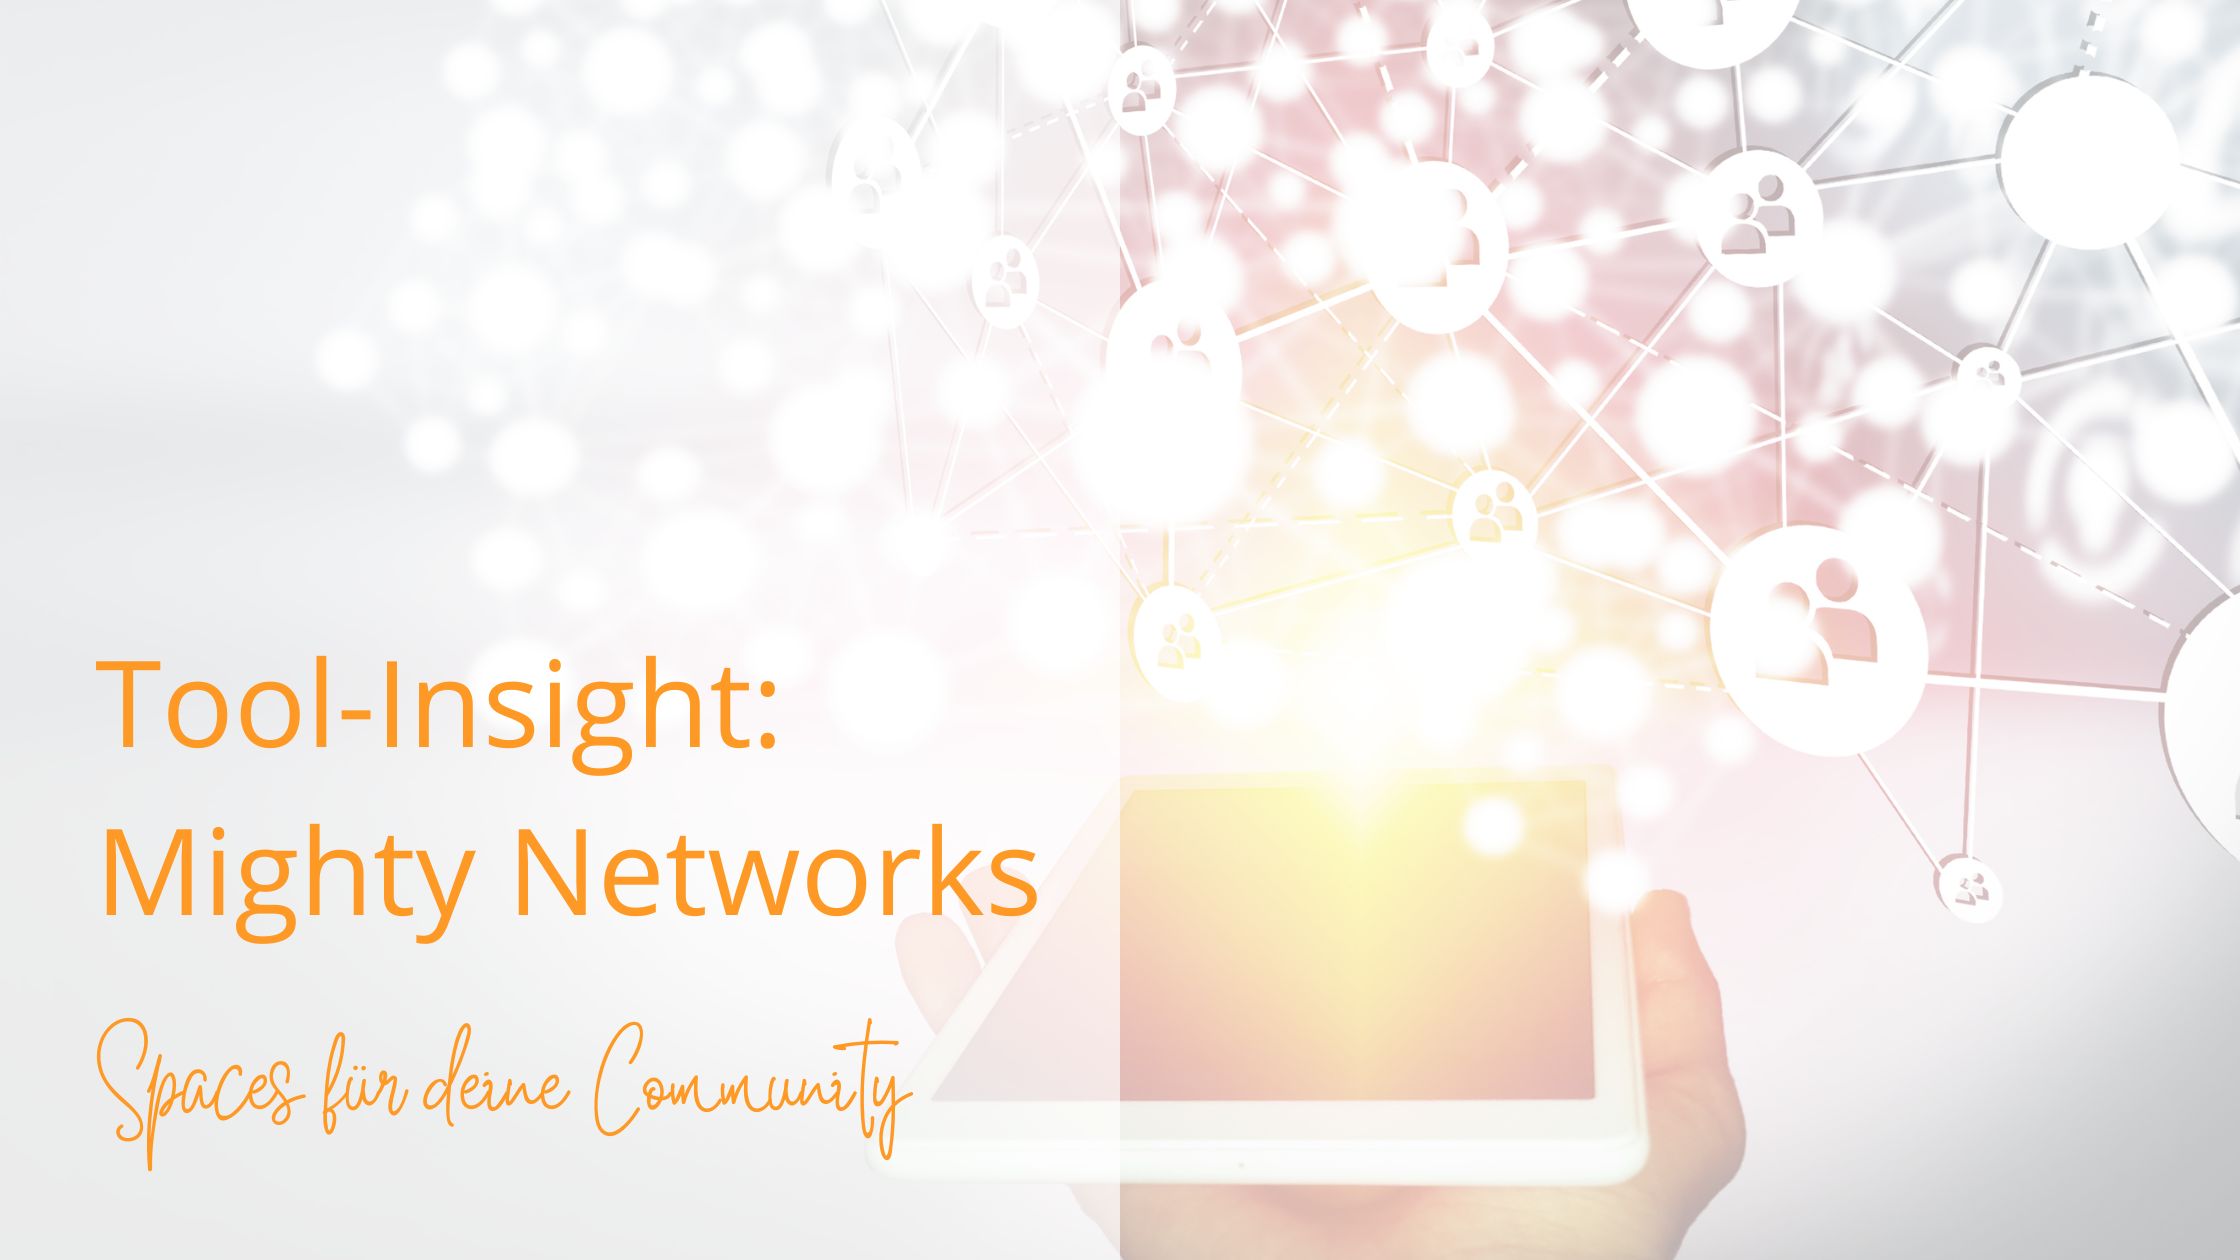 You are currently viewing Mighty Networks – So setzt du die Spaces für deine Community richtig ein